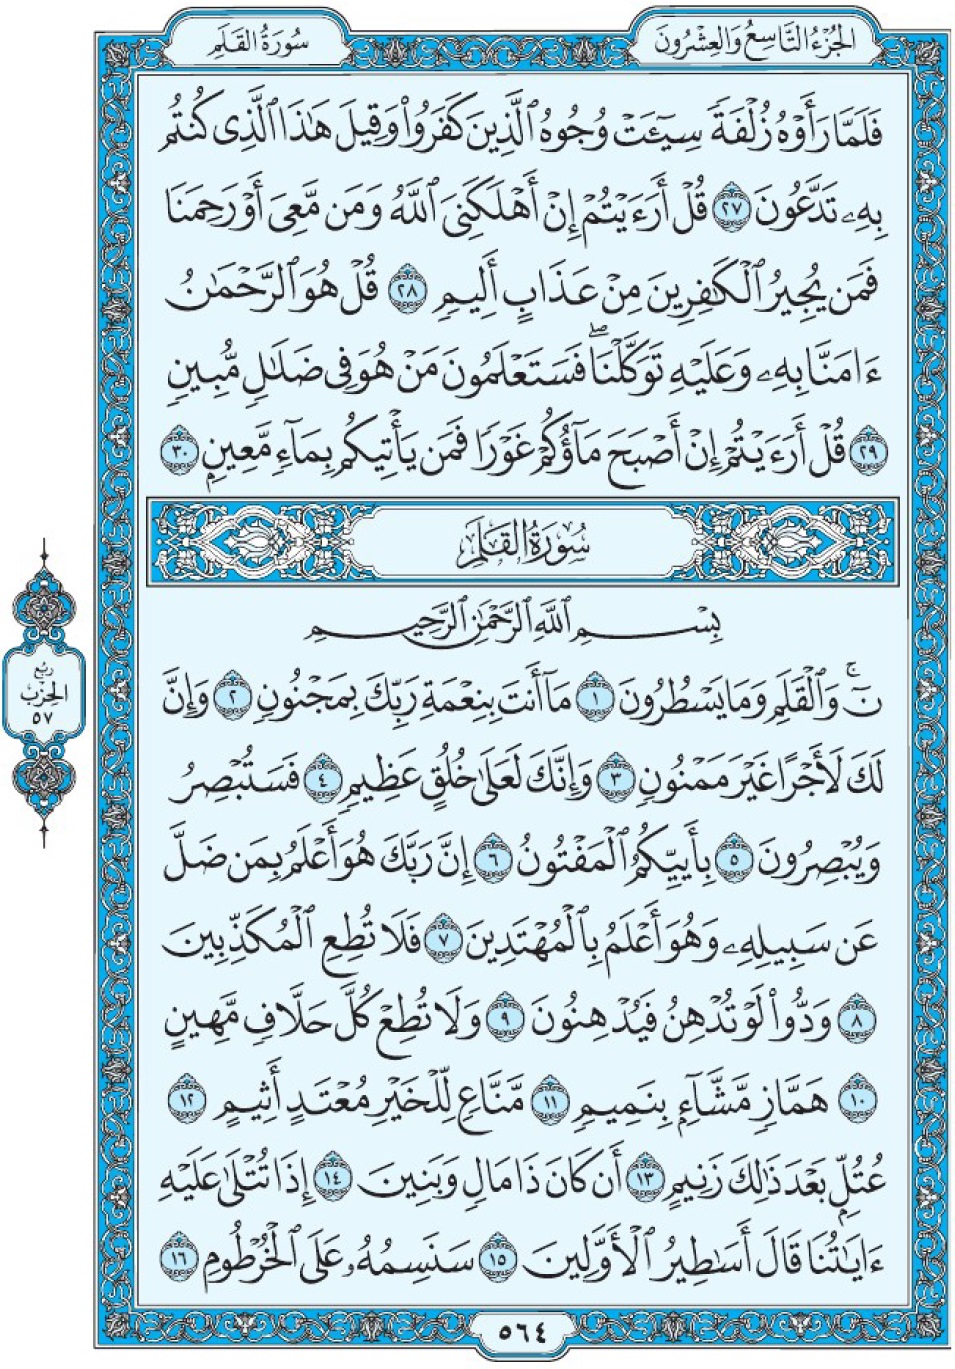 Коран Мединский мусхаф страница 564, сура 68 аль-Калям سورة ٦٨ القلم 